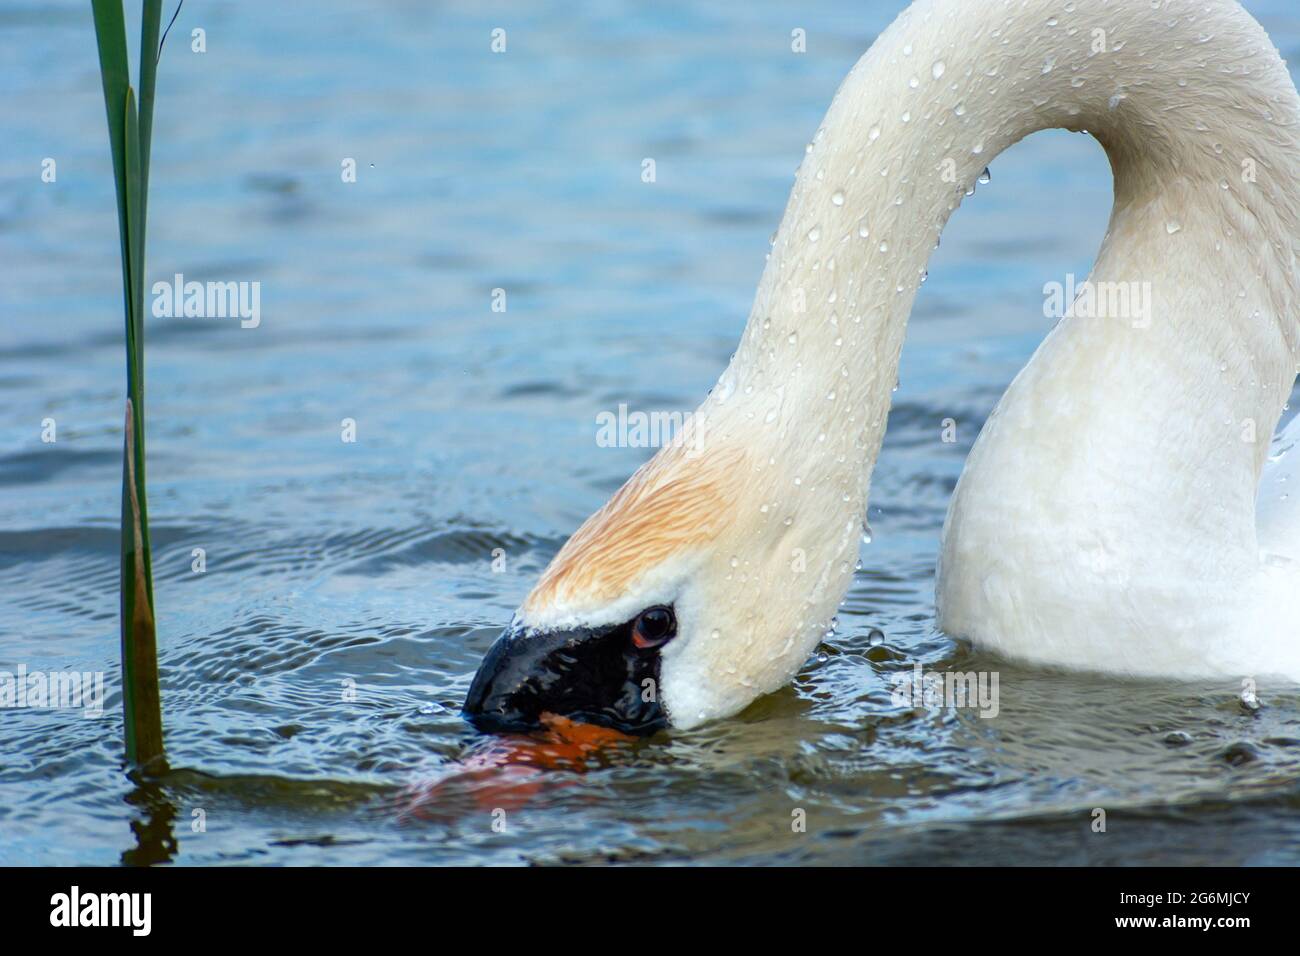 Cisne con su cabeza sumergida en el agua Foto de stock